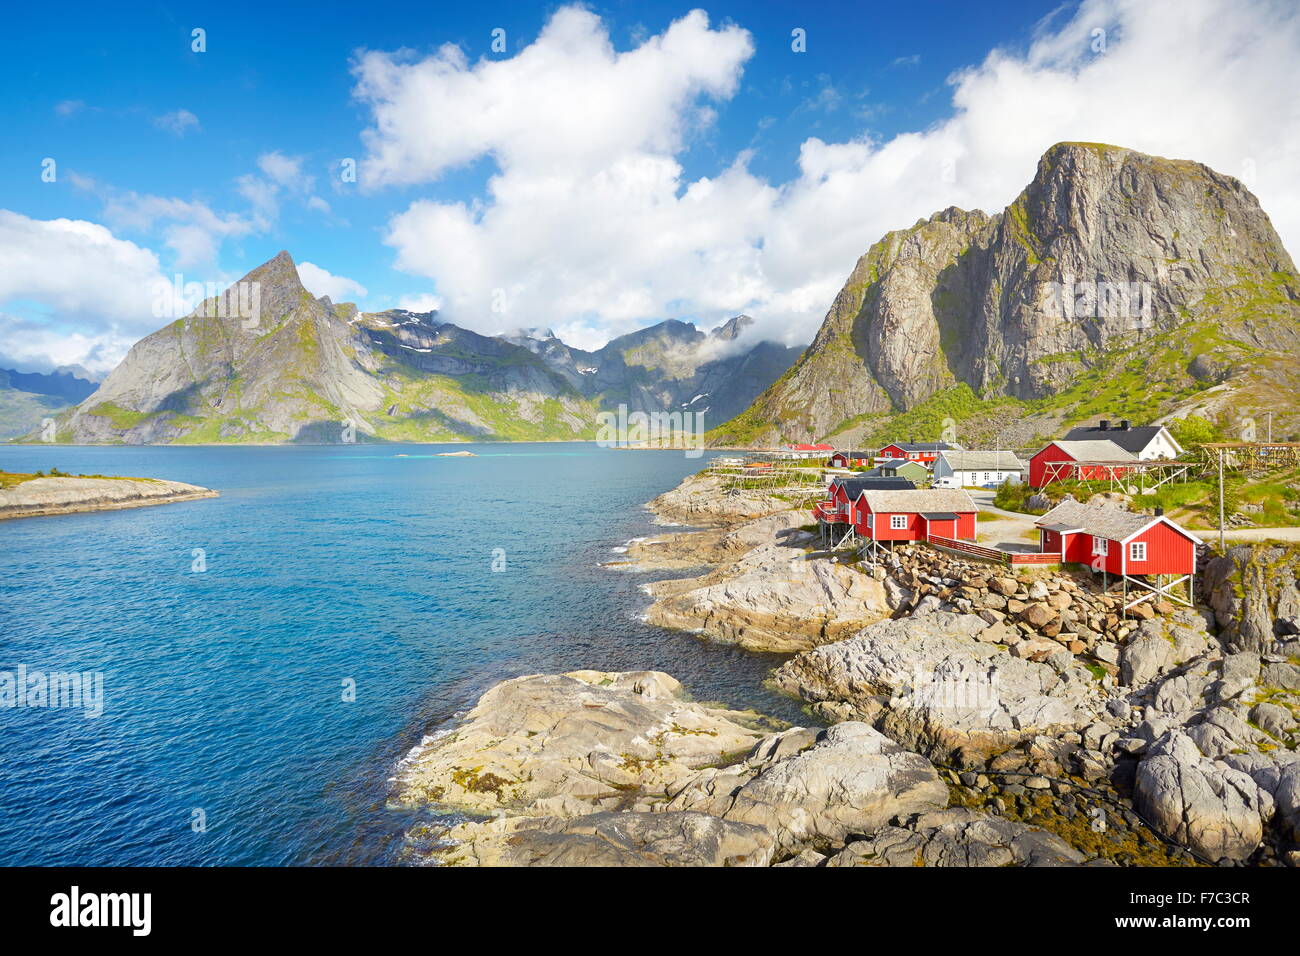 En bois rouge traditionnel de cabanes de pêcheurs, l'île de Lofoten rorbu paysage, Norvège Banque D'Images